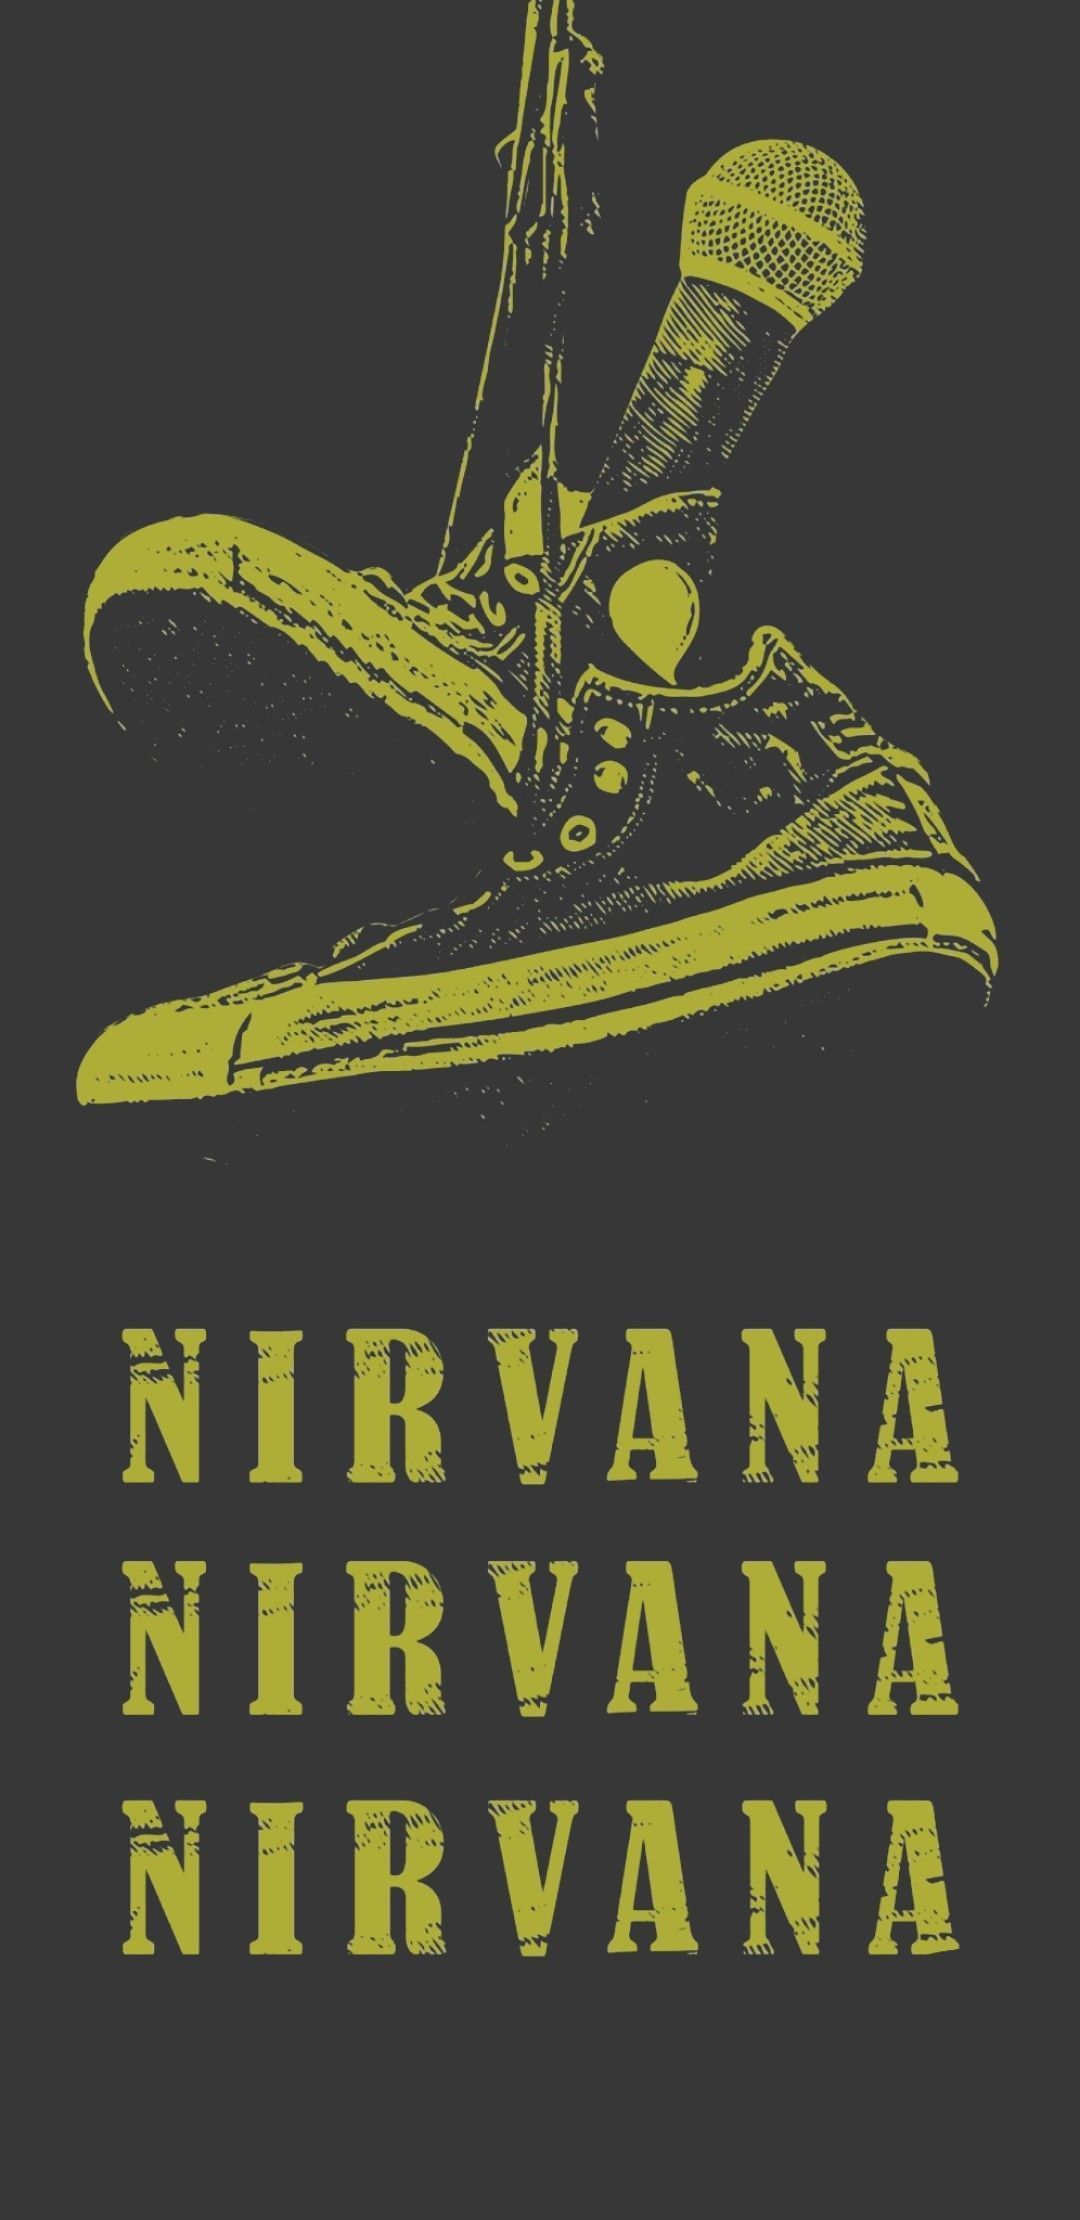 Nirvana Wallpaper. Nirvana wallpaper, Nirvana, Band logos